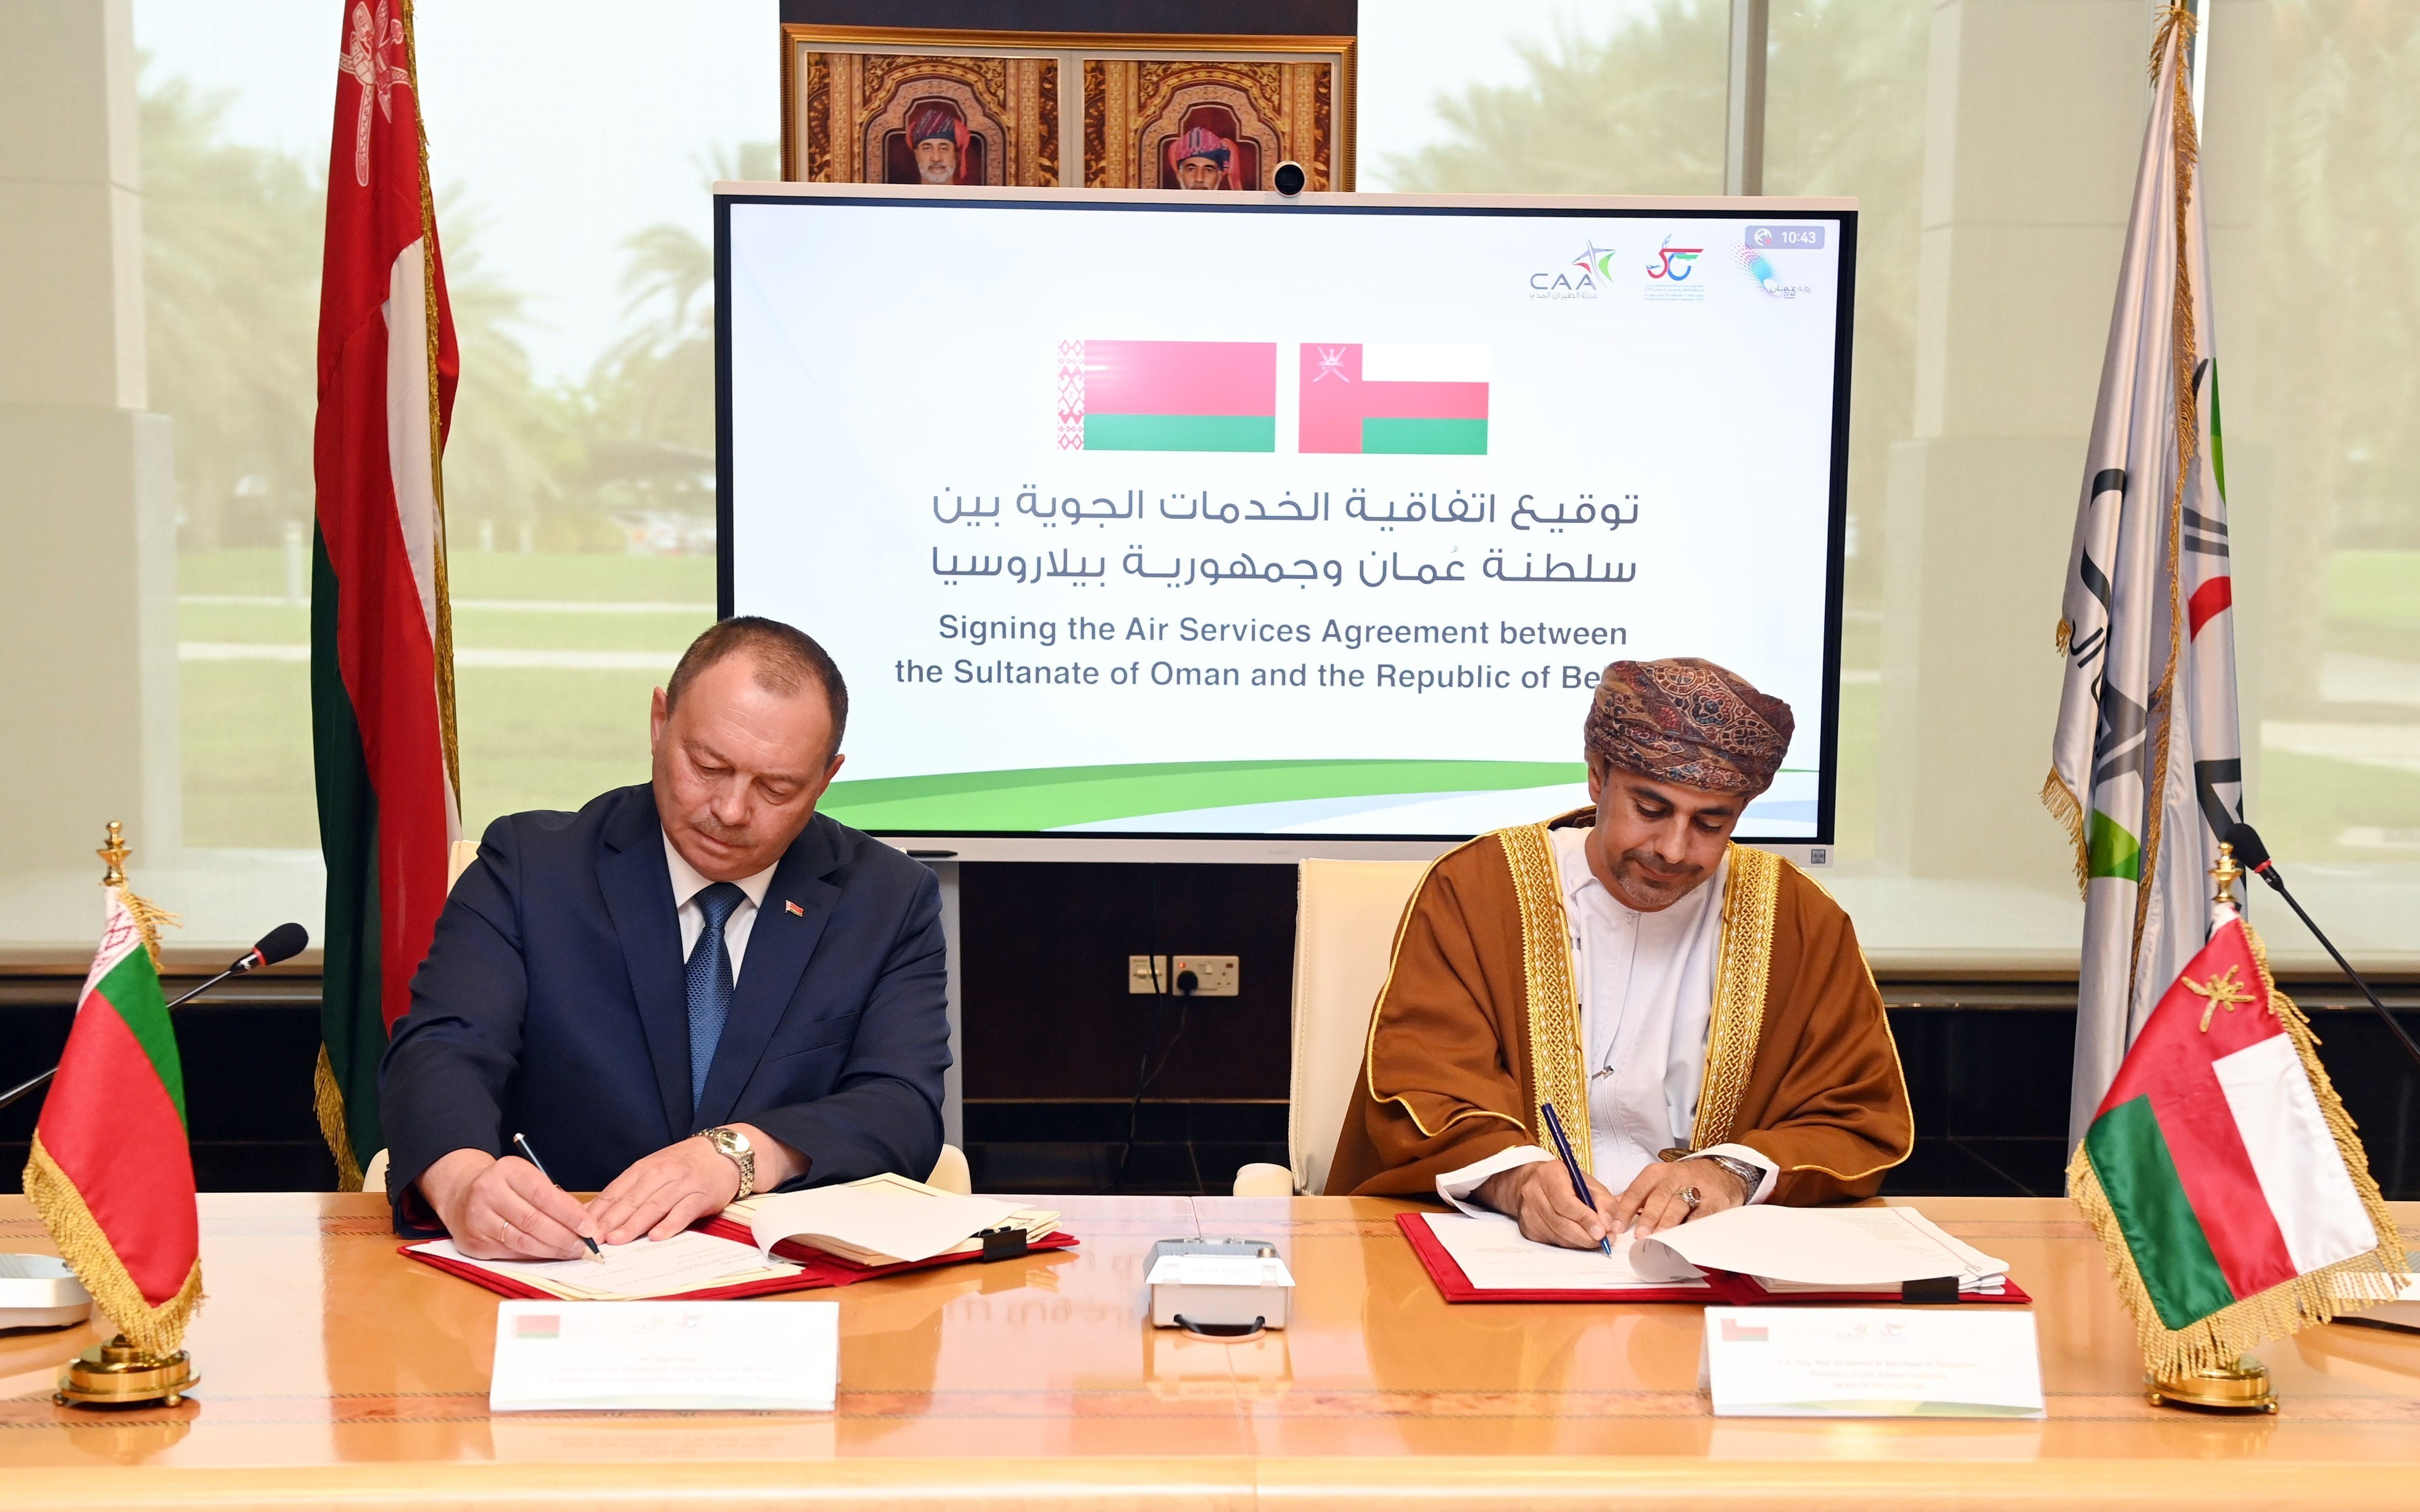 اتفاقية الخدمات الجوية بين سلطنة عمان وجمهورية بيلاروسيا